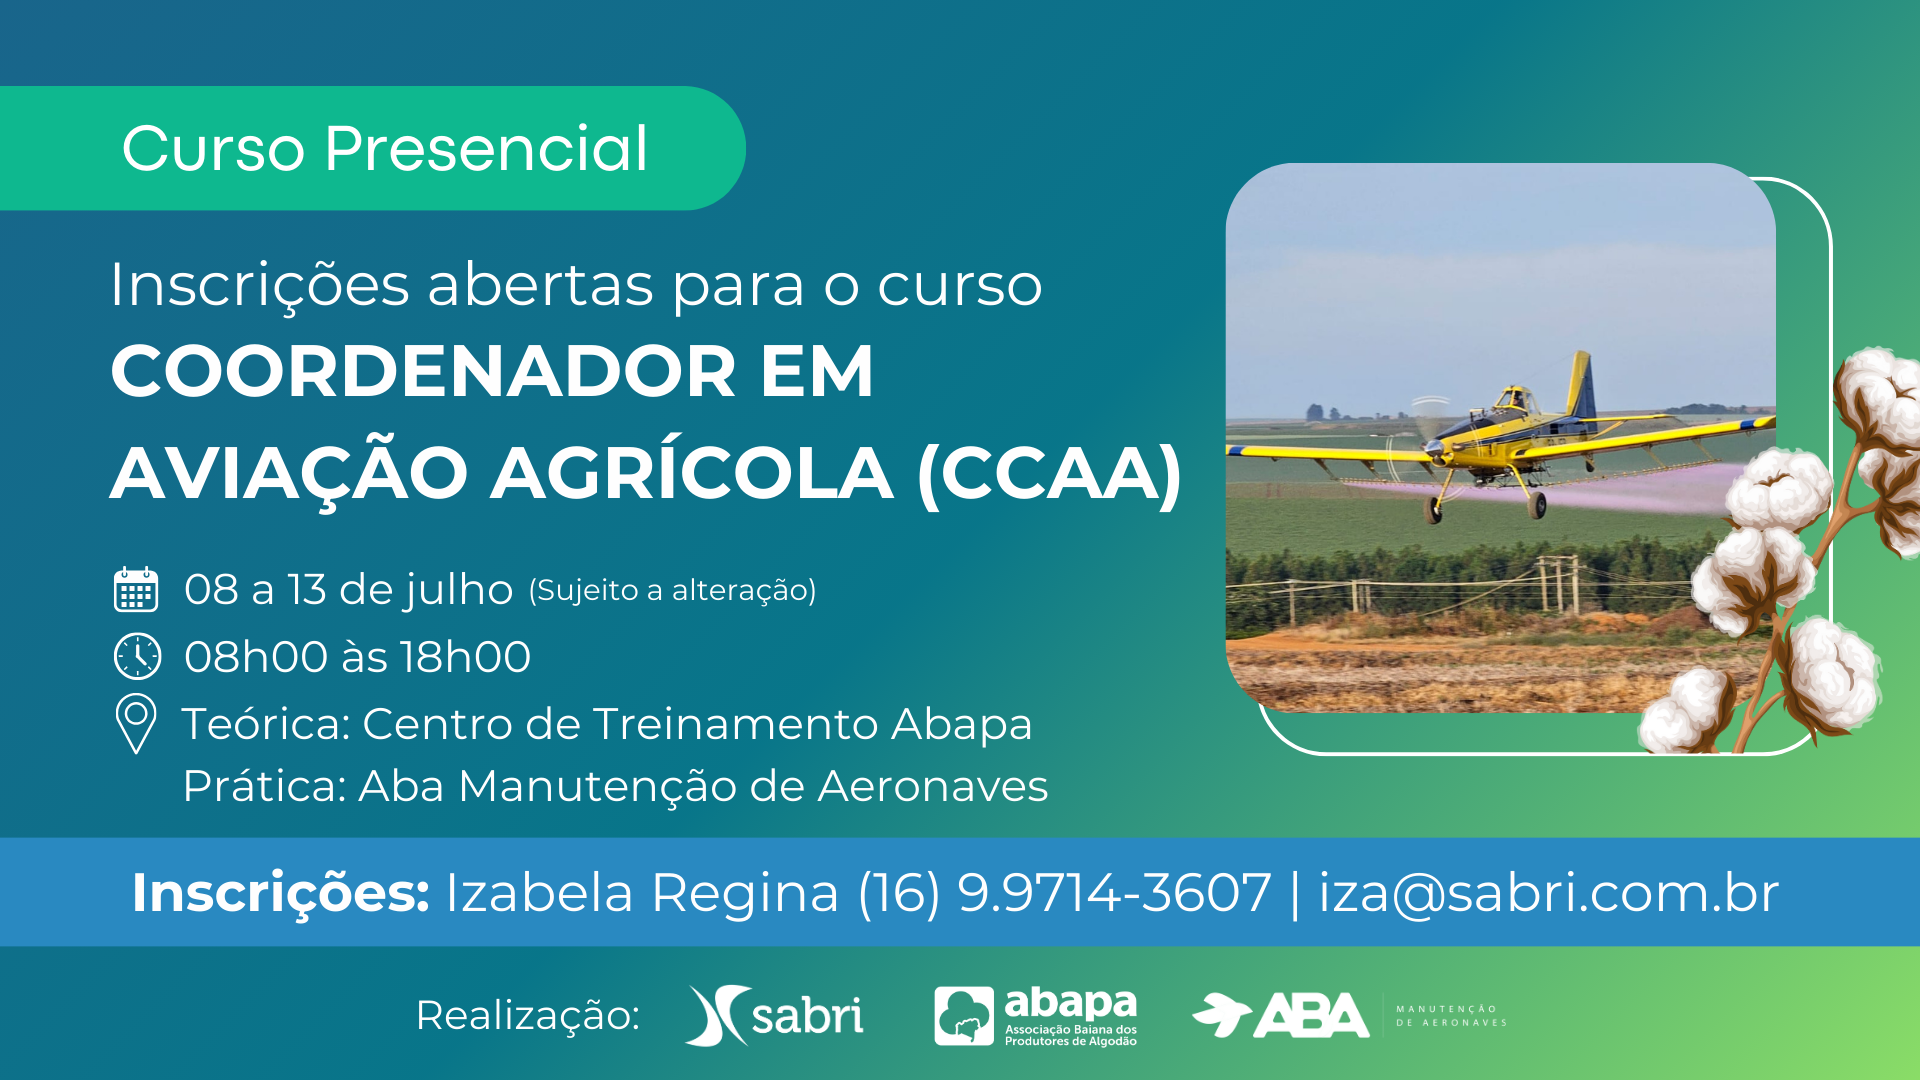 Coordenador em Aviação Agrícola (CCAA)